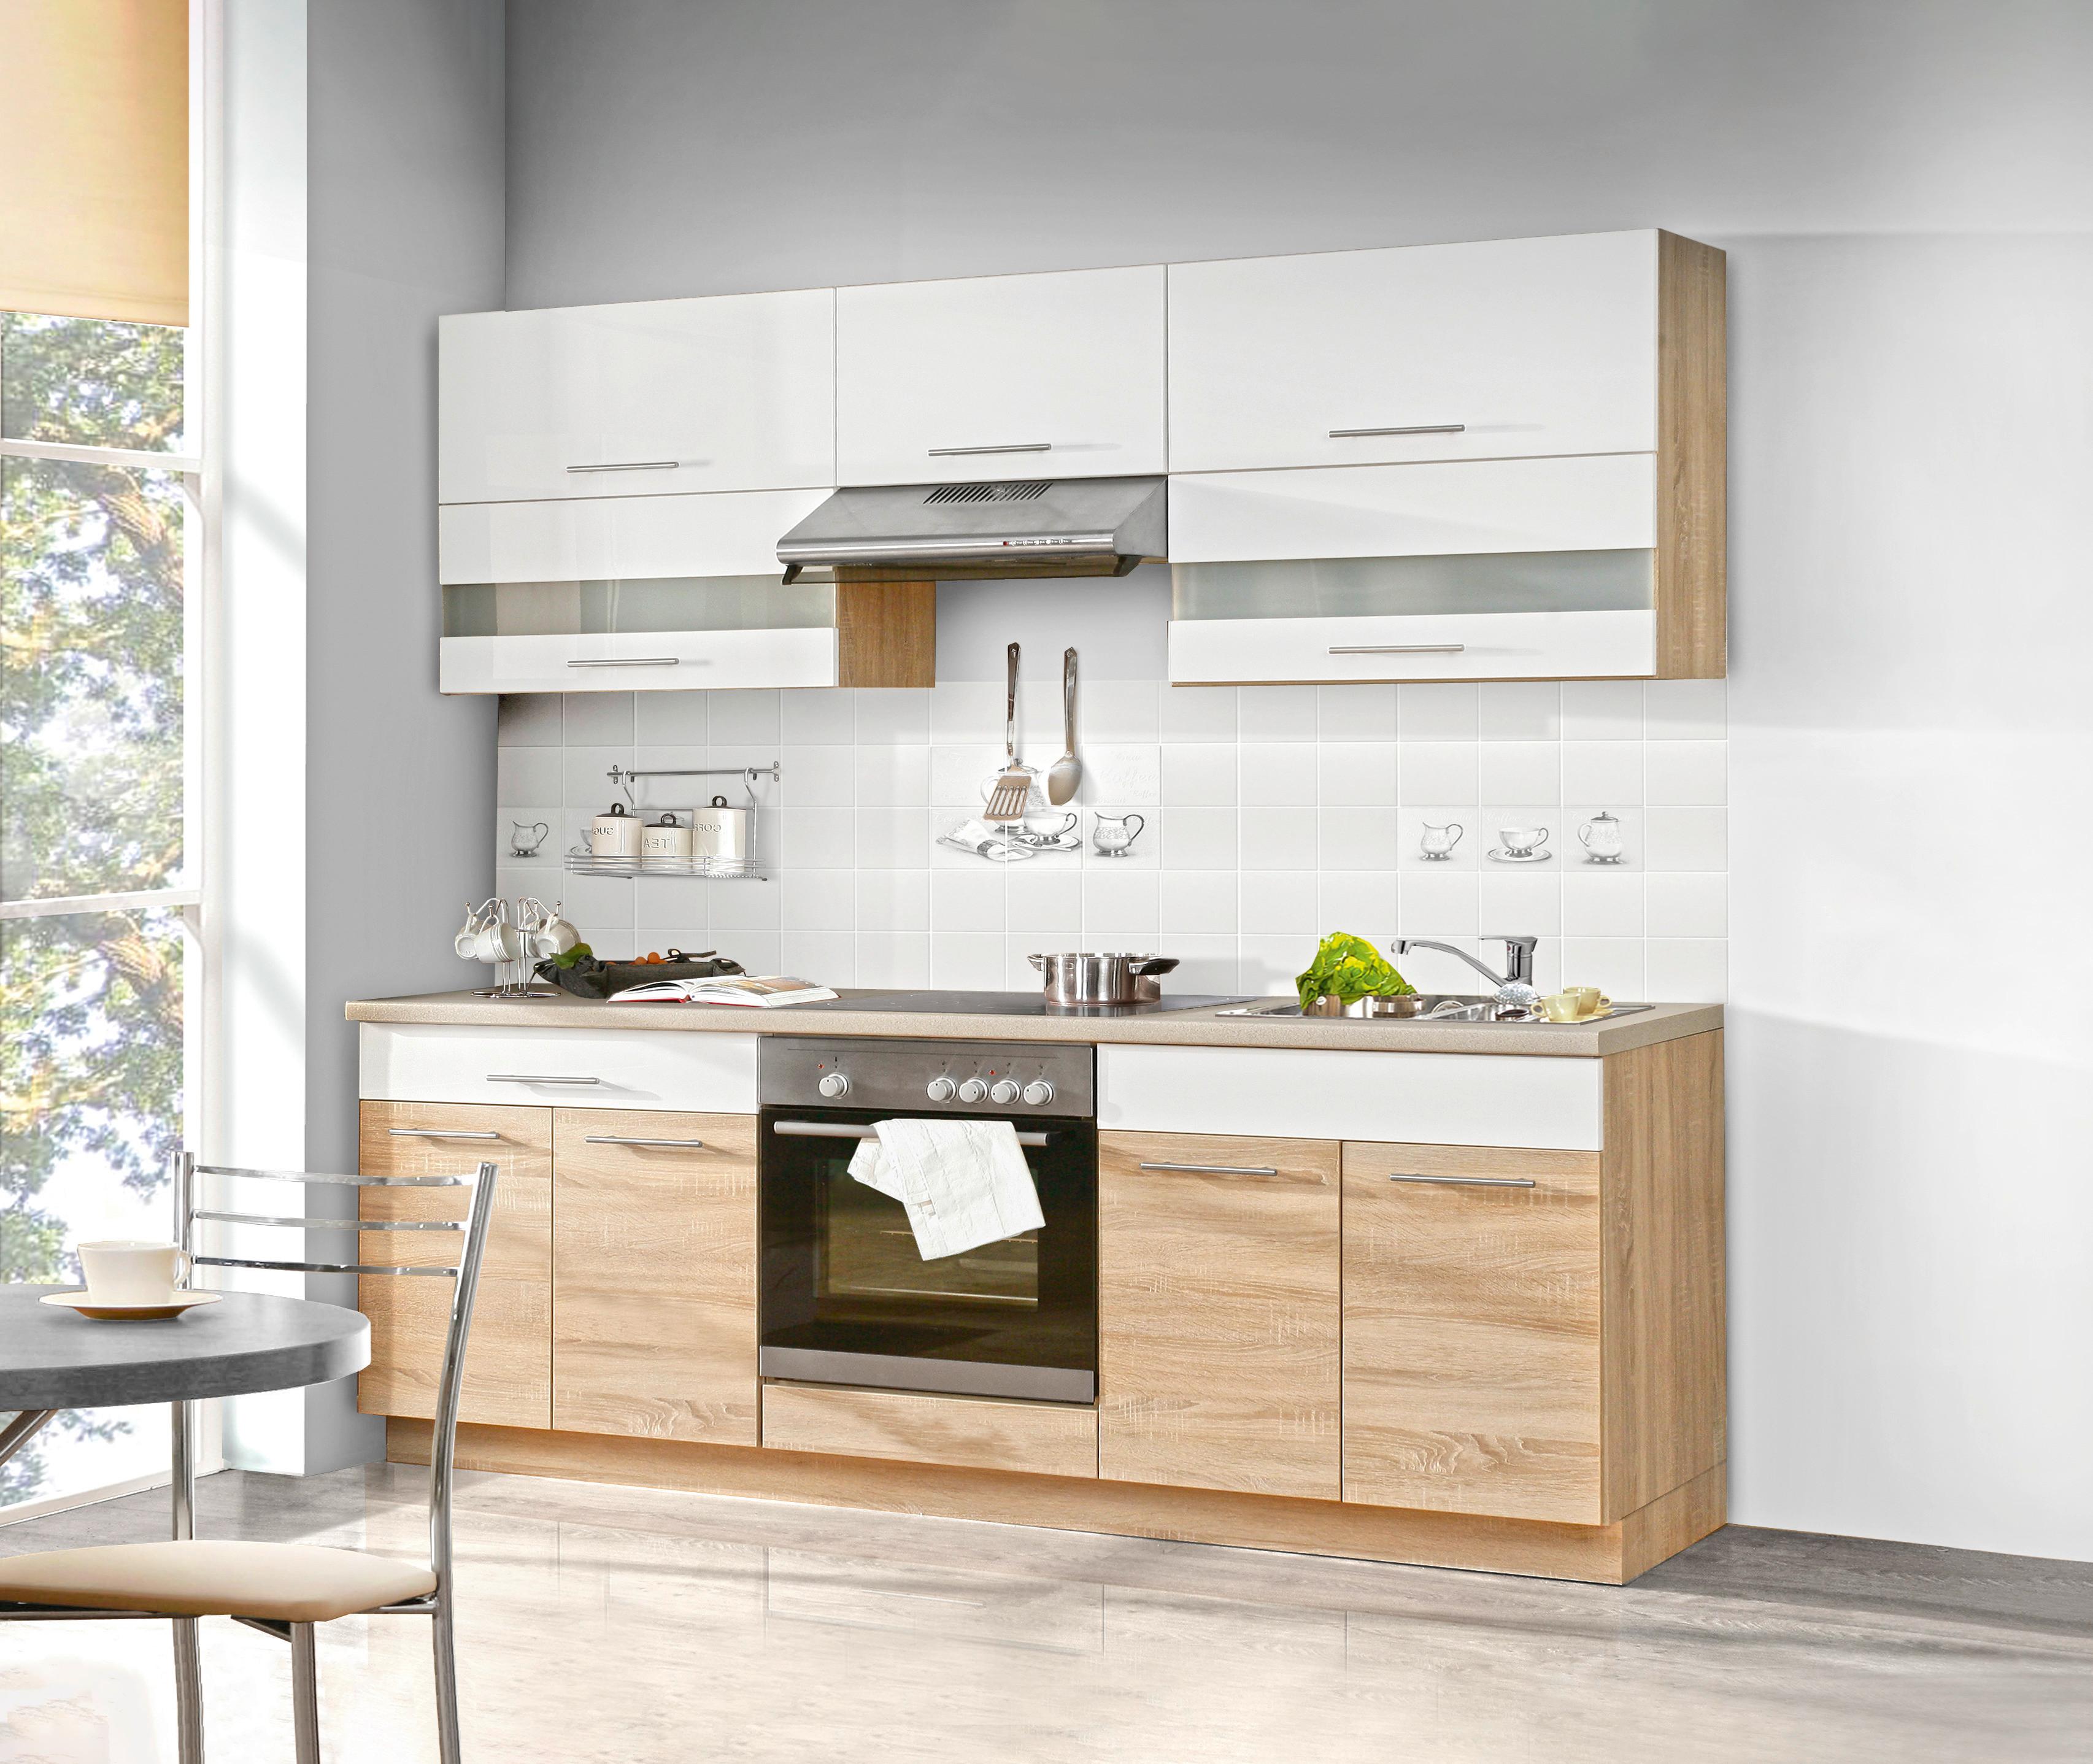 Kuhinjski Blok Corina - bijela/hrast Sonoma, Modern, staklo/drvo (220/214.9/60cm) - Based